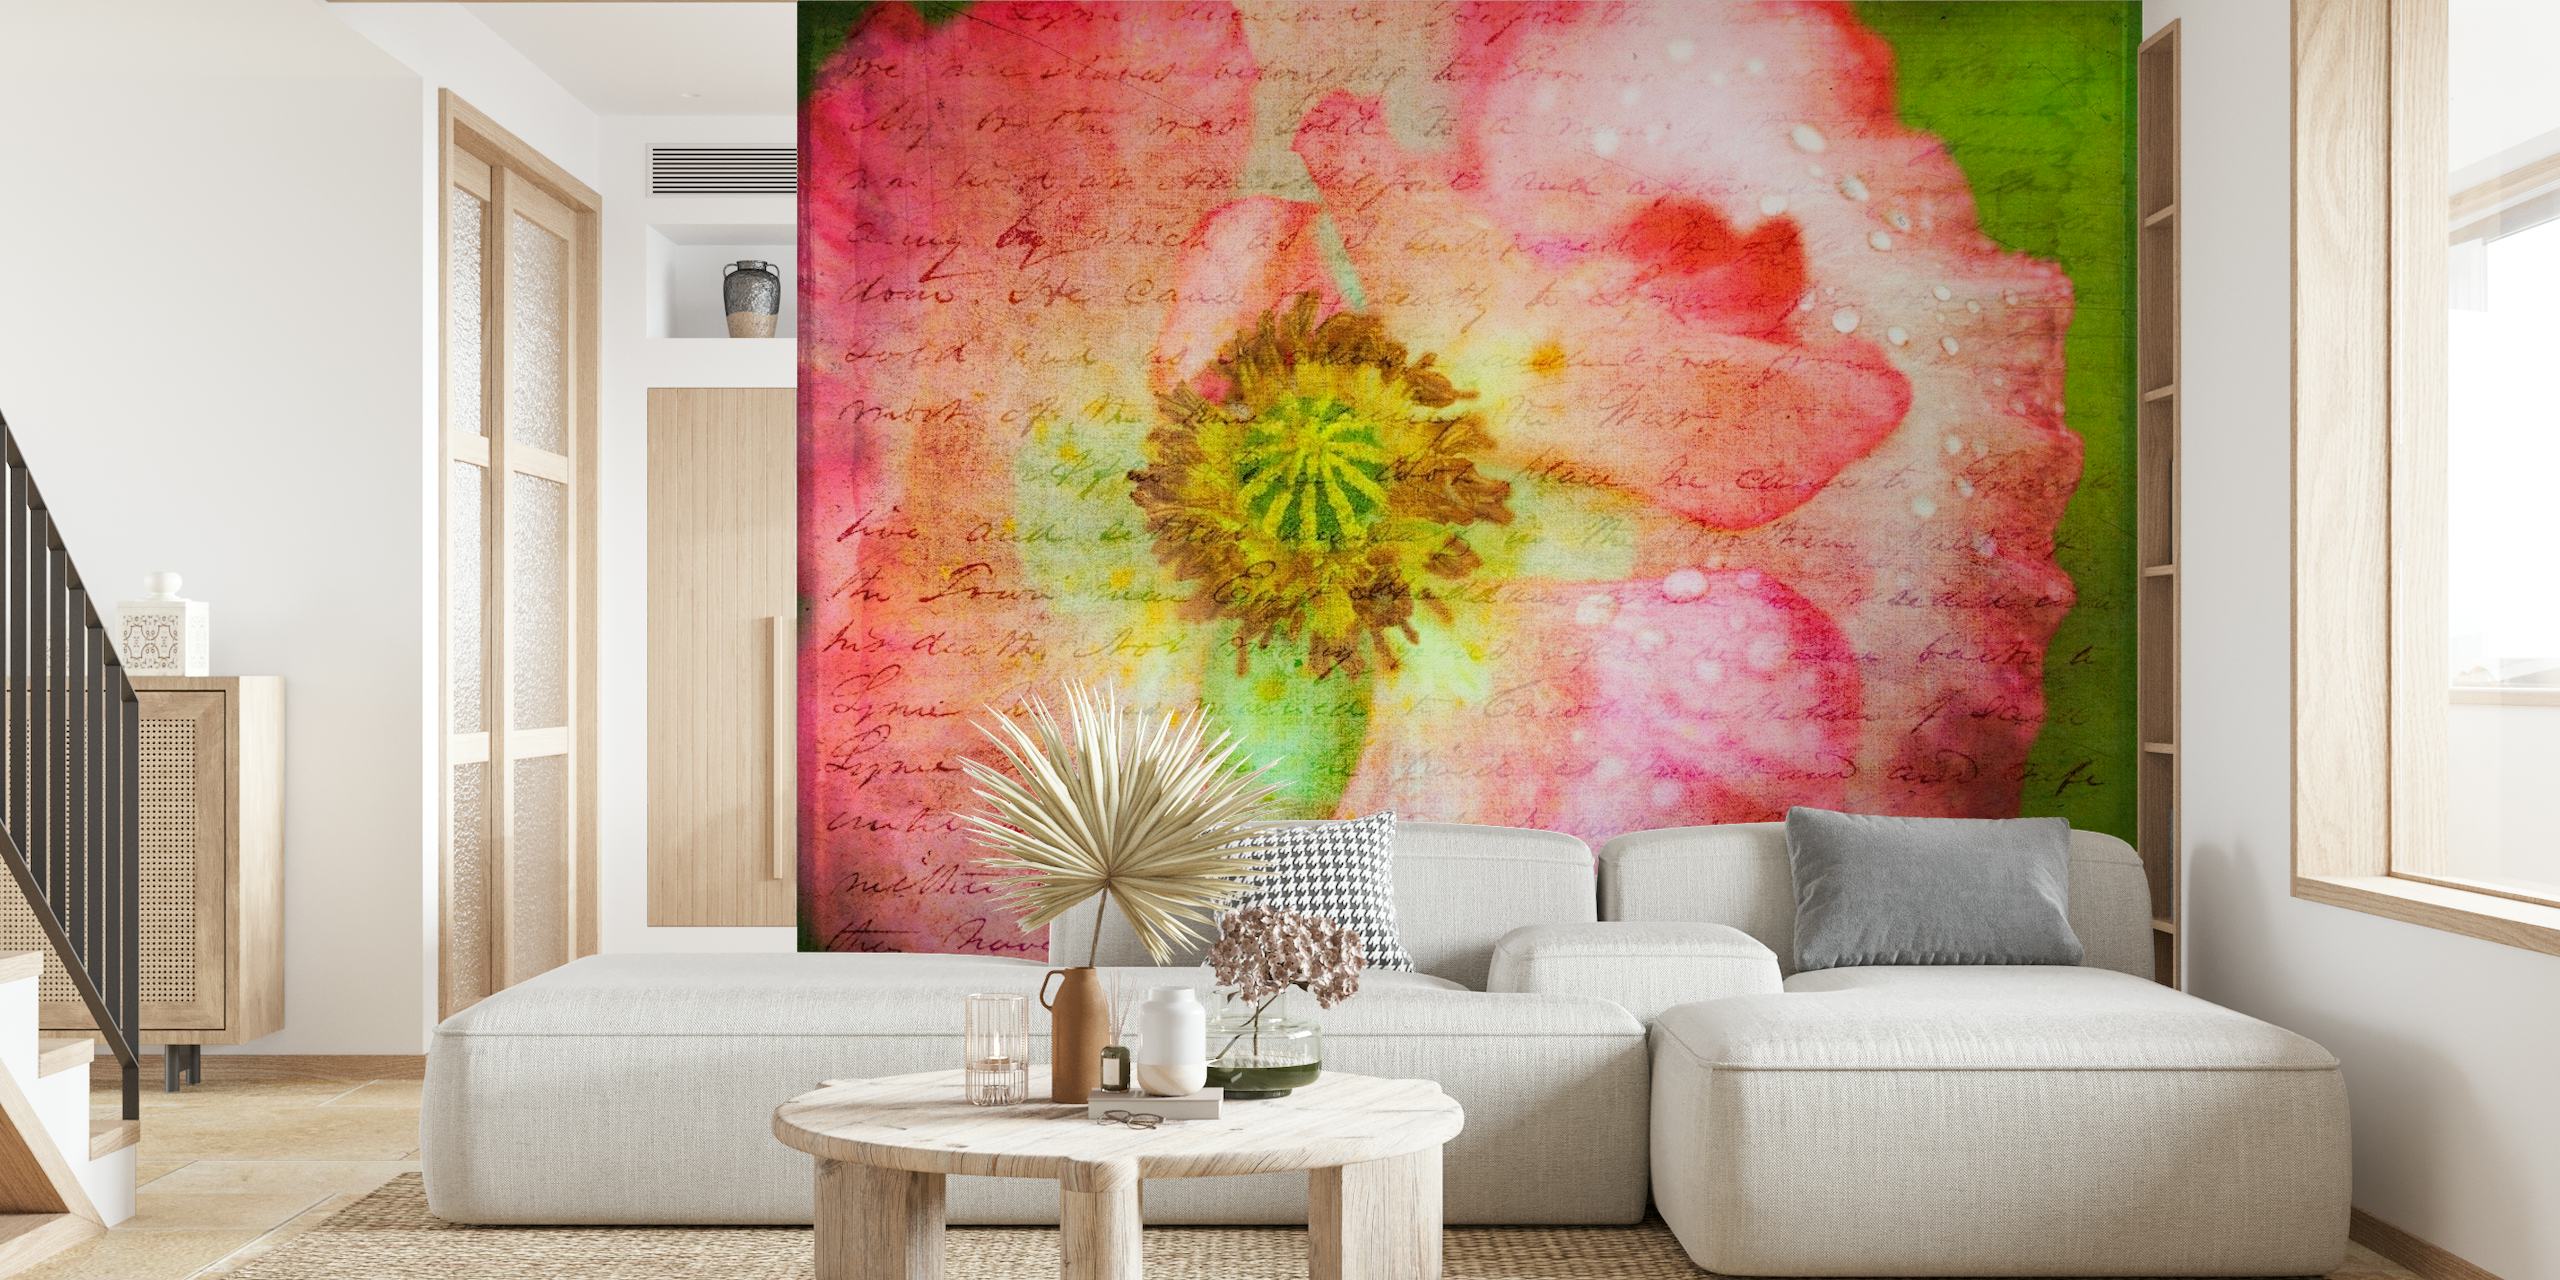 Representação artística de uma flor de papoula rosa com um fotomural vinílico de fundo verde texturizado